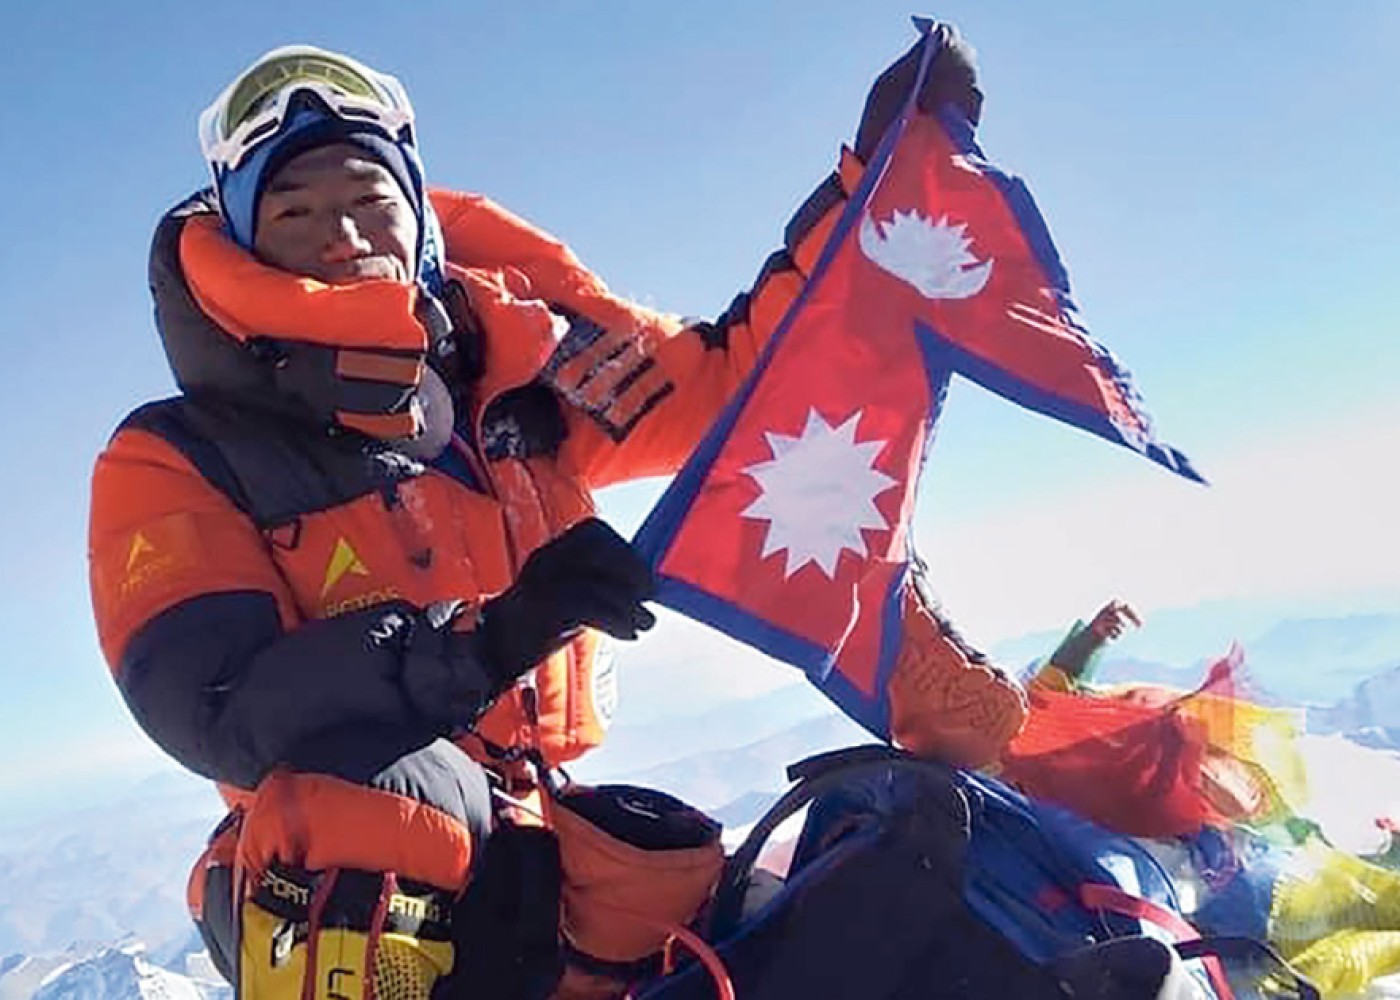 Nepallı alpinist Everesti 29-cu dəfə fəth edərək öz rekordunu YENİLƏDİ - FOTO